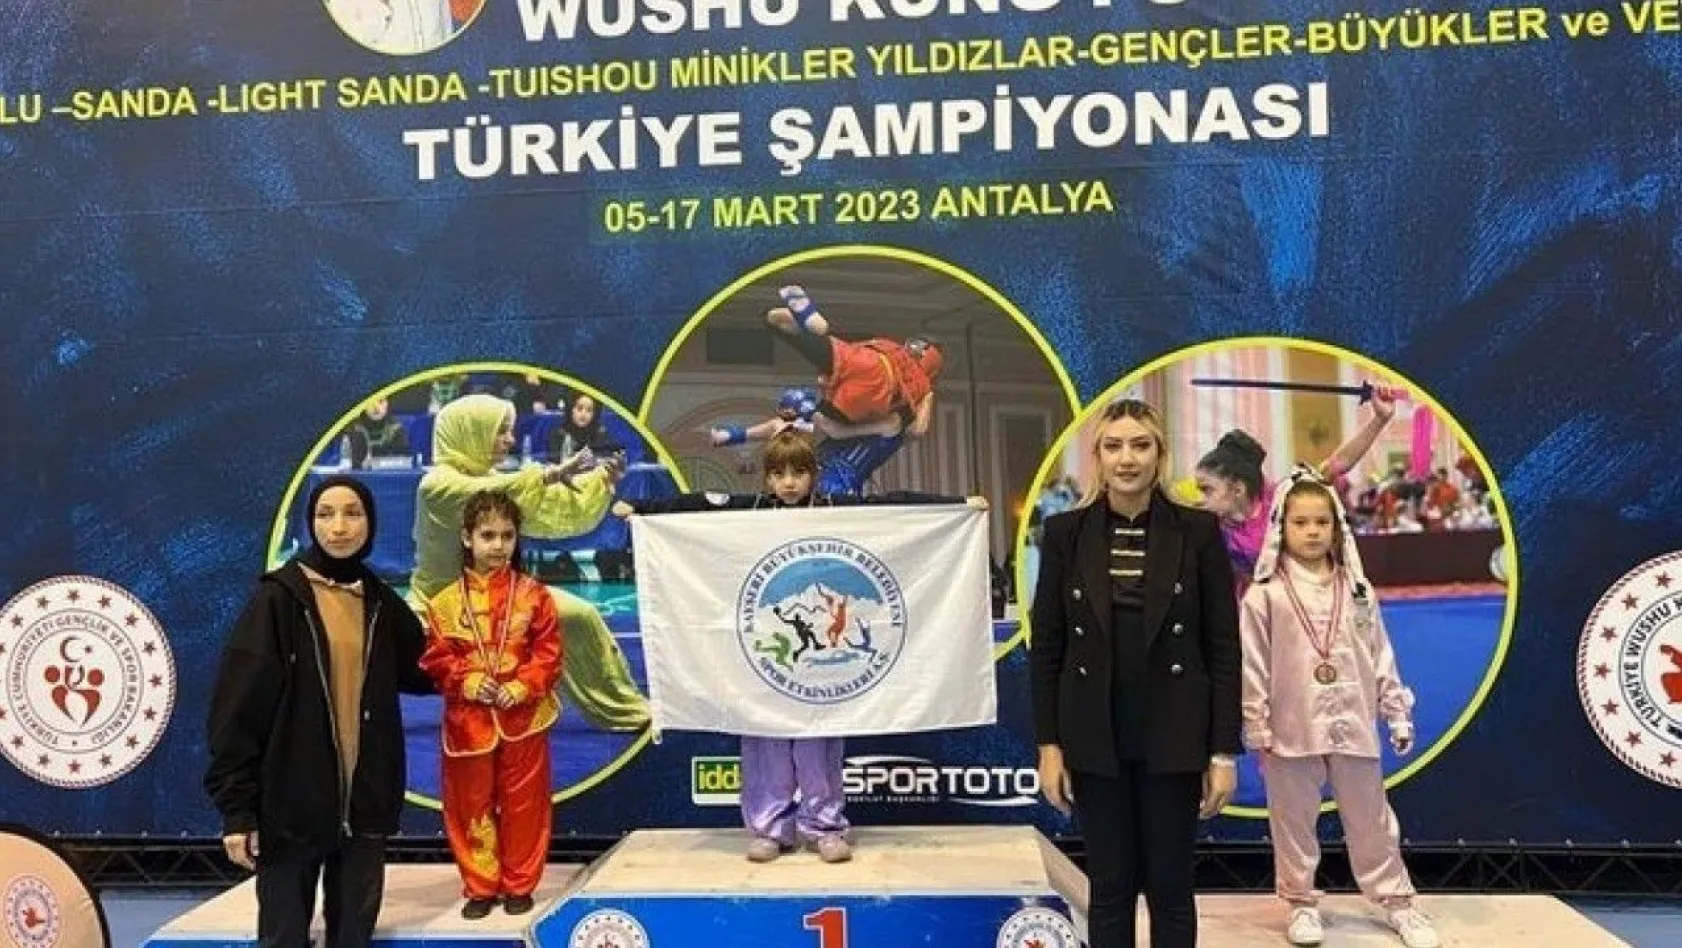 Büyükkılıç'tan Büyükşehir'in Türkiye Şampiyonu sporcusu minik Mira'ya tebrik